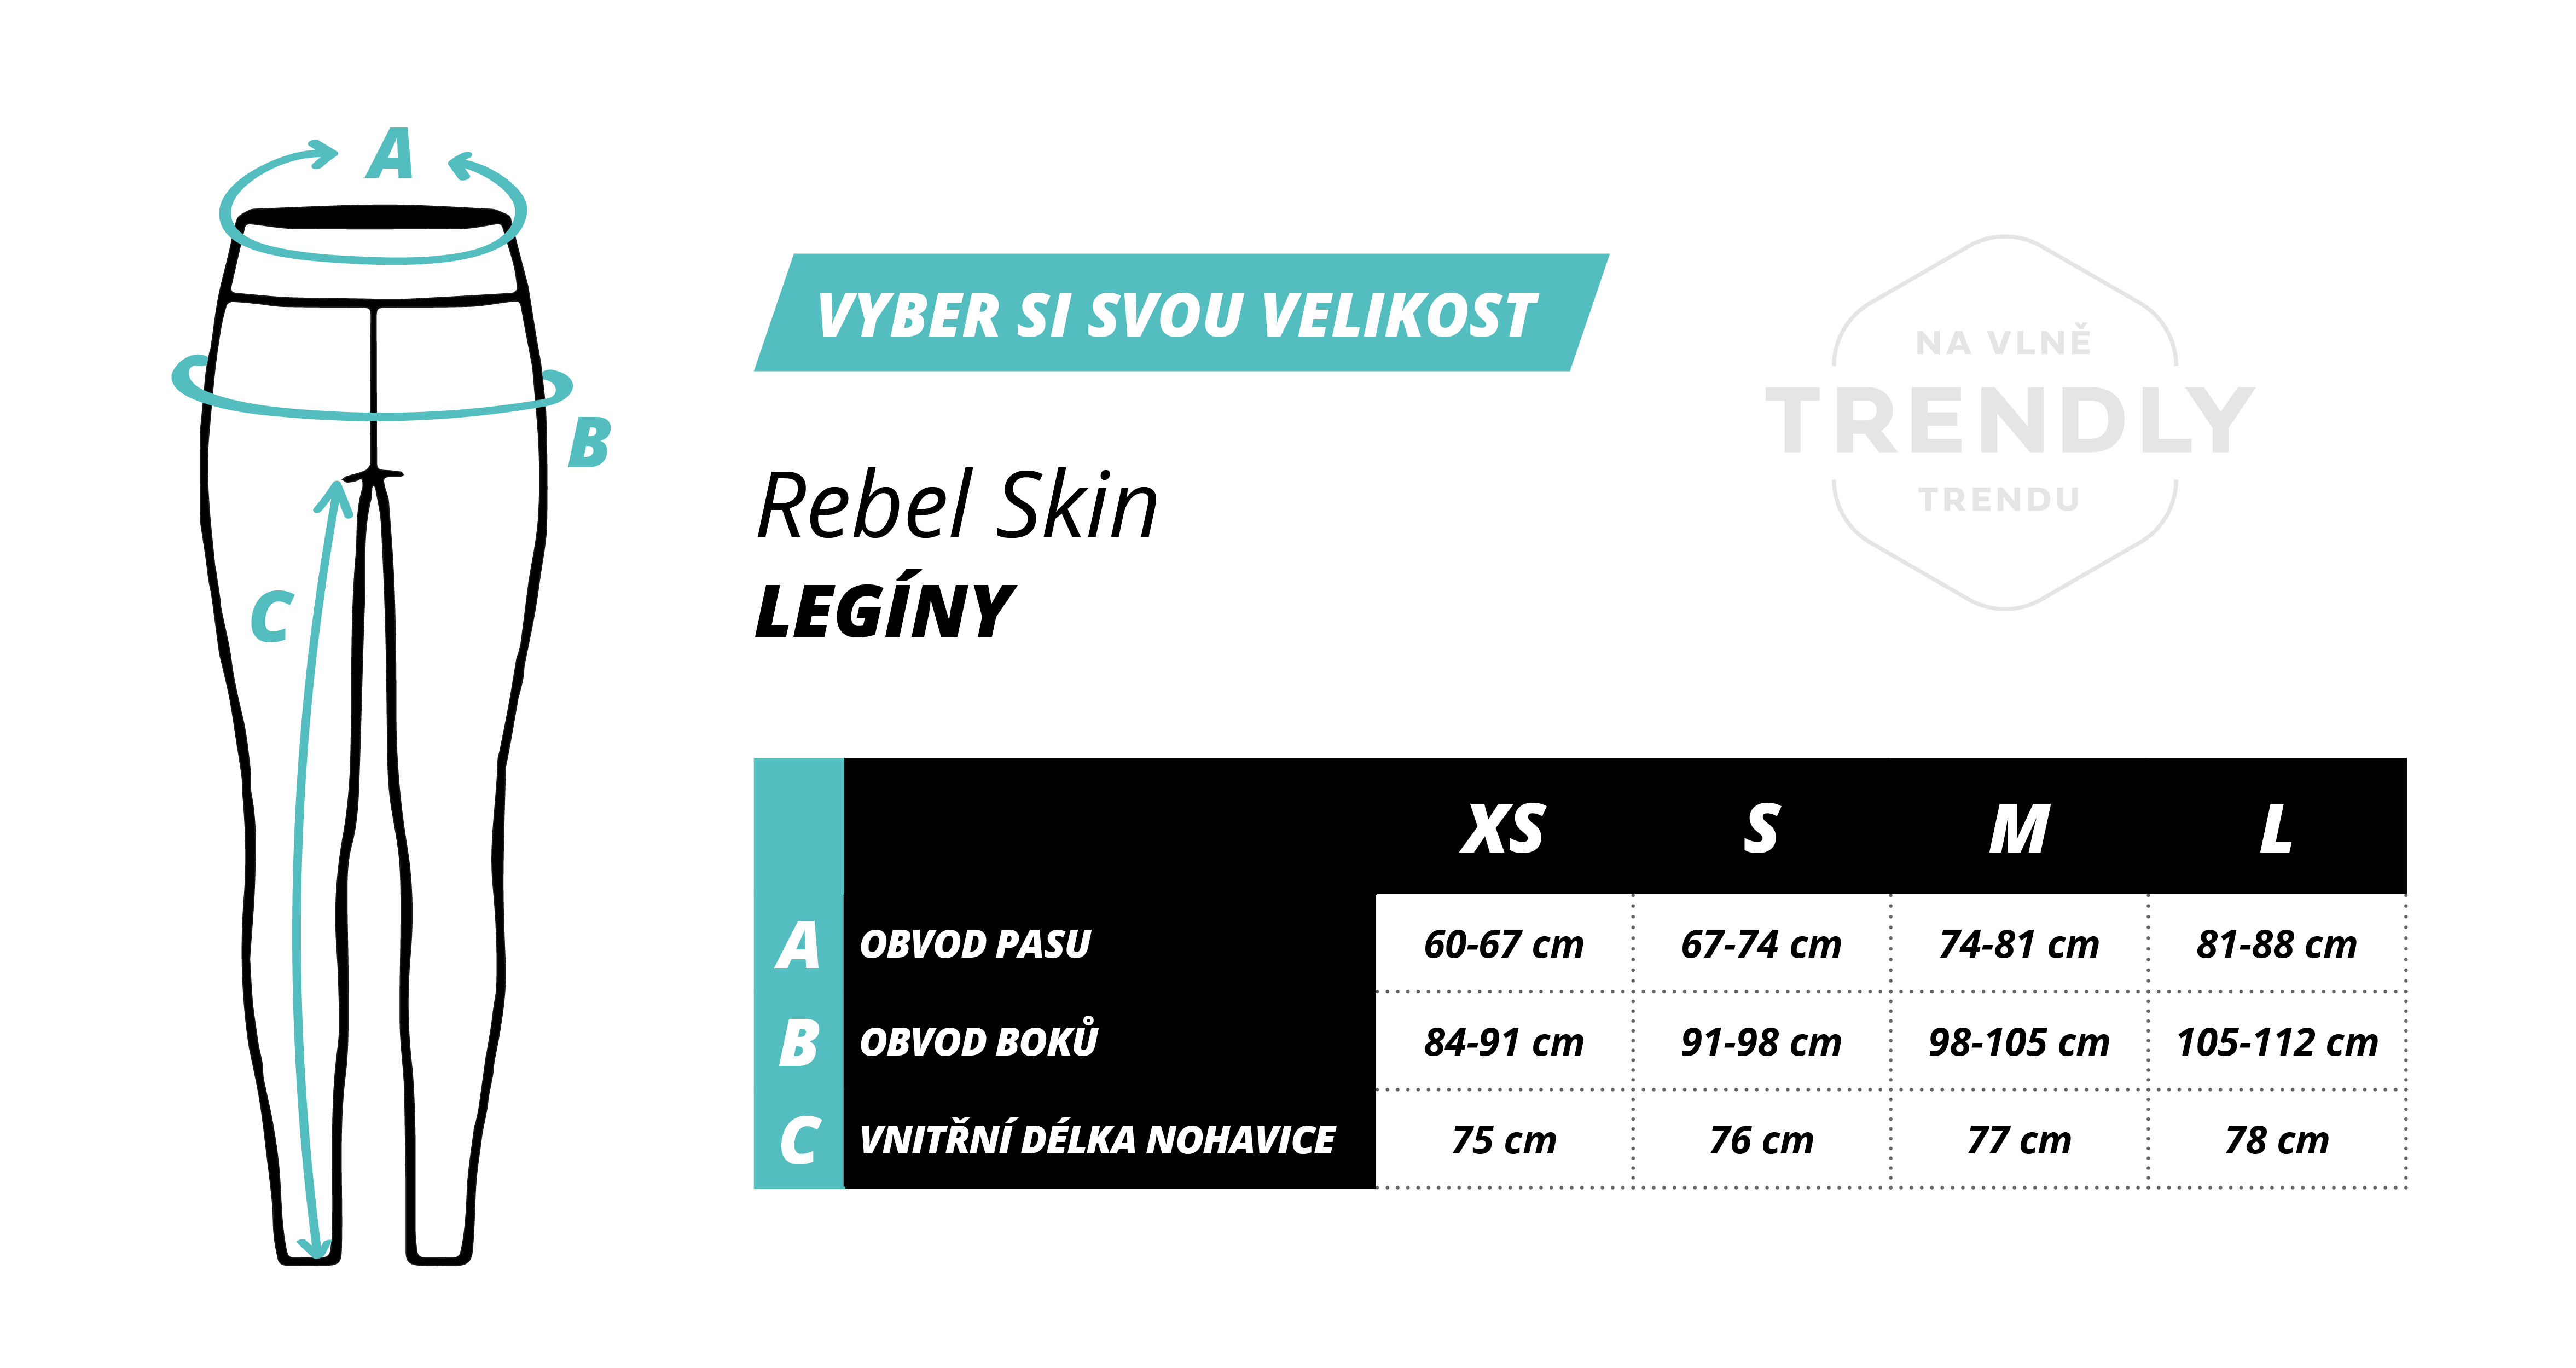 trendly_velikosti_legi_ny_rebel